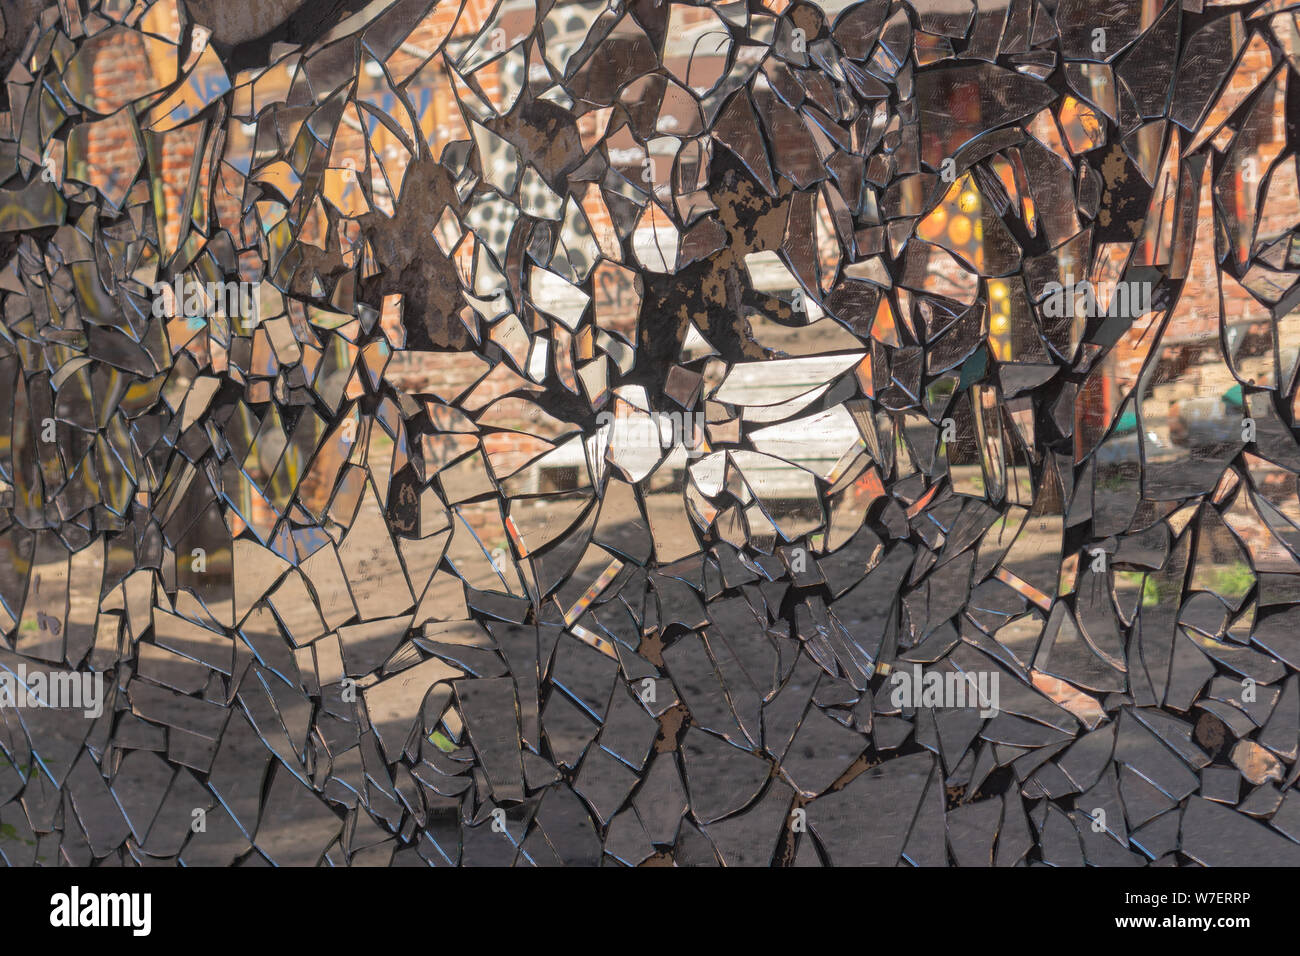 Mur de ciment fissuré avec mosaic sales fabriqués à partir de morceaux de miroir brisé avec distorsion de la réflexion en eux. Résumé La réflexion dans les éclats de miroir. Rough Banque D'Images